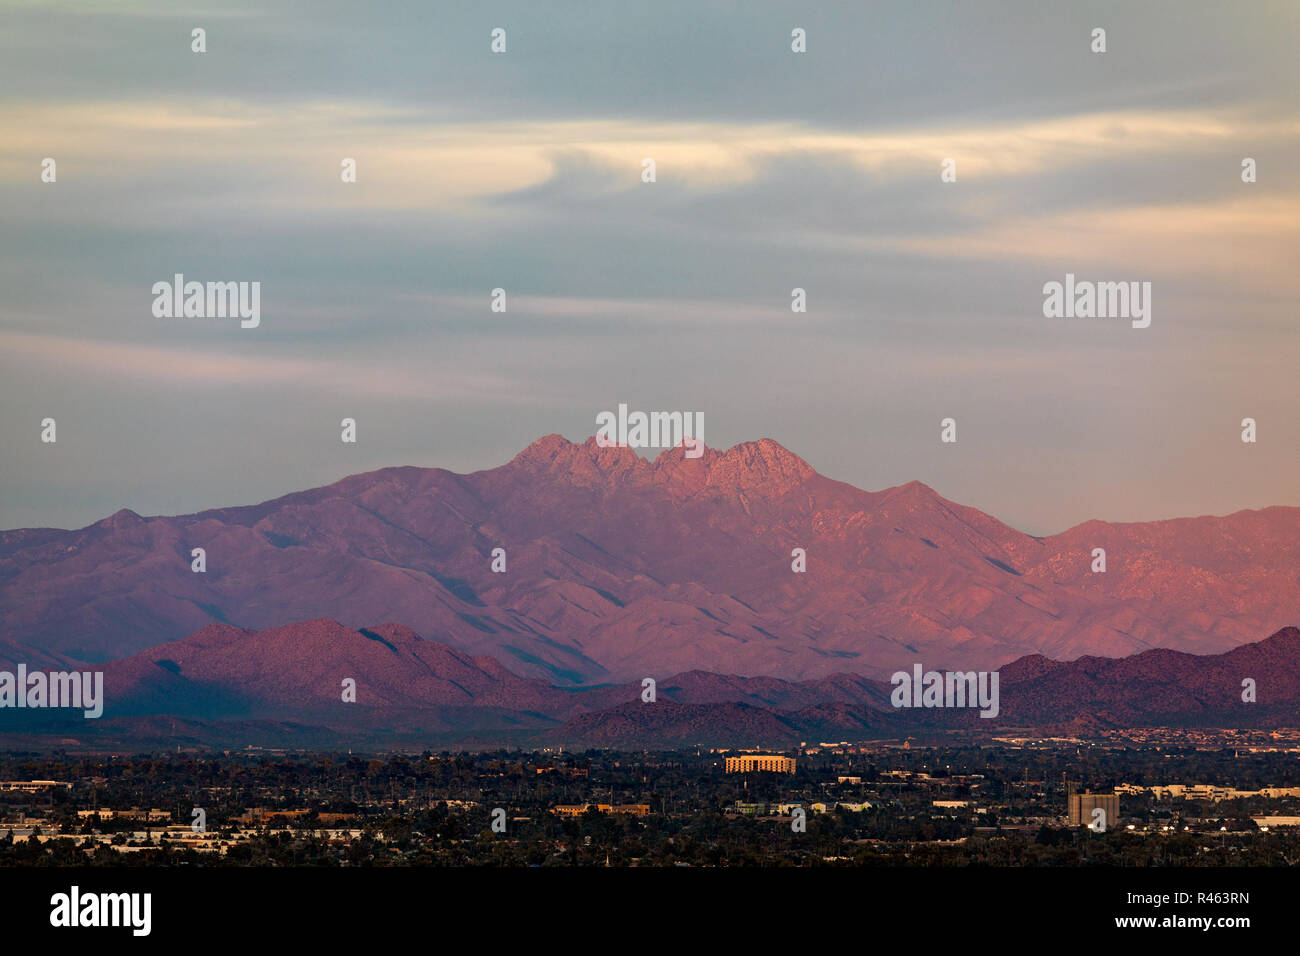 Mesa, Arizona, avec la chaîne de montagnes four Peaks au coucher du soleil Banque D'Images